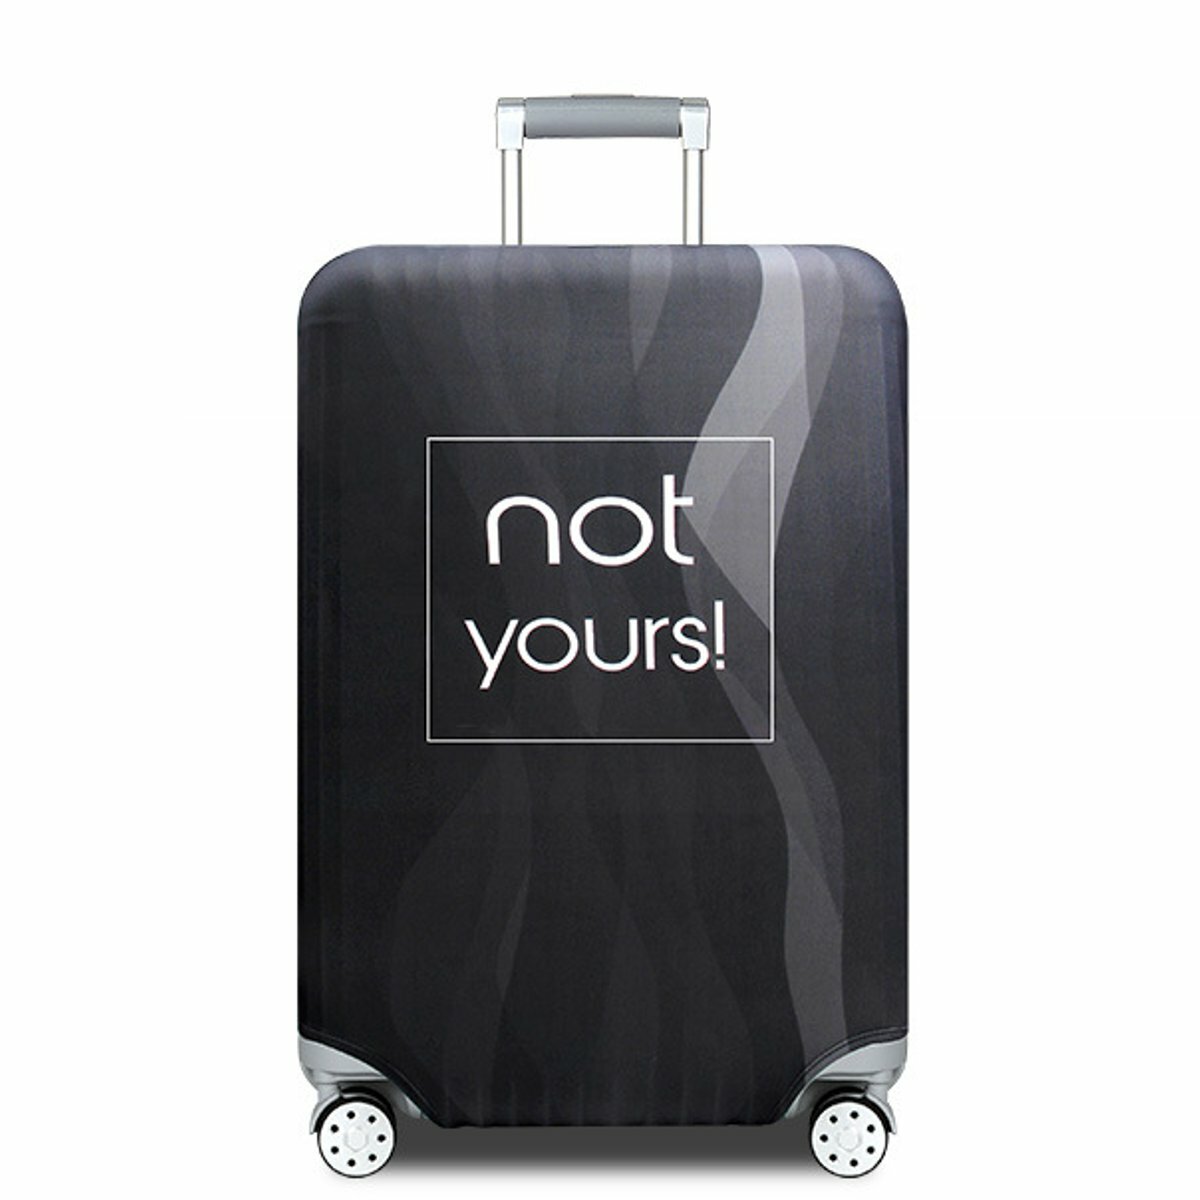 Elastyczne pokrowce na bagaż podróżny od 18 do 32 cali, chroniące przed kurzem, zarysowaniami i wodą